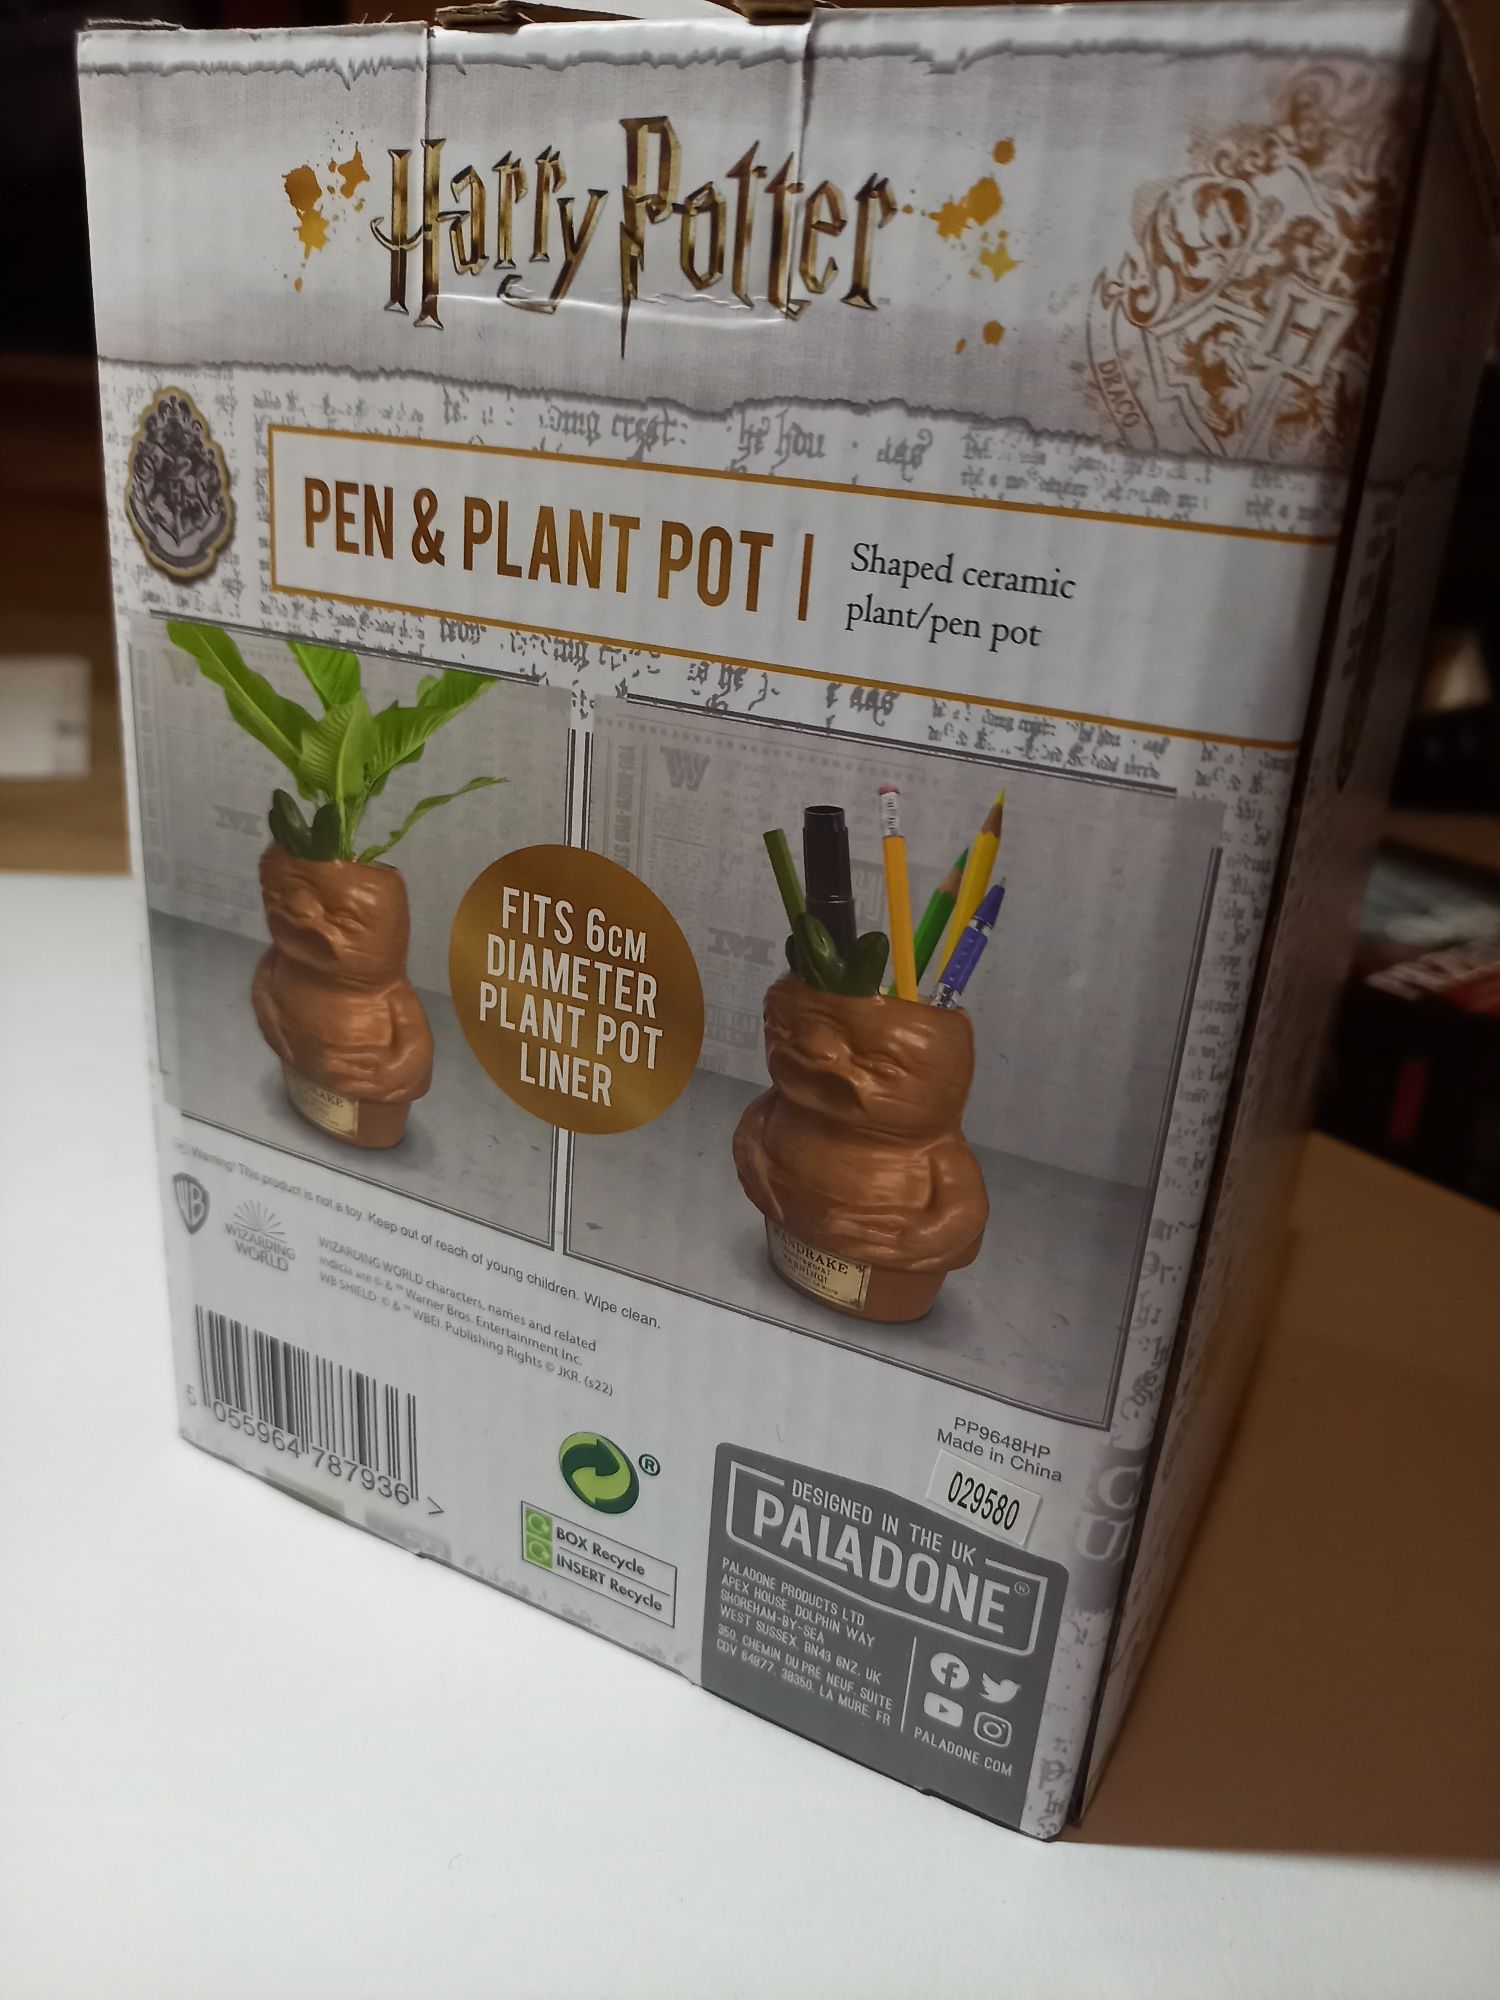 Harry Potter, Mandrake pen & plant pot